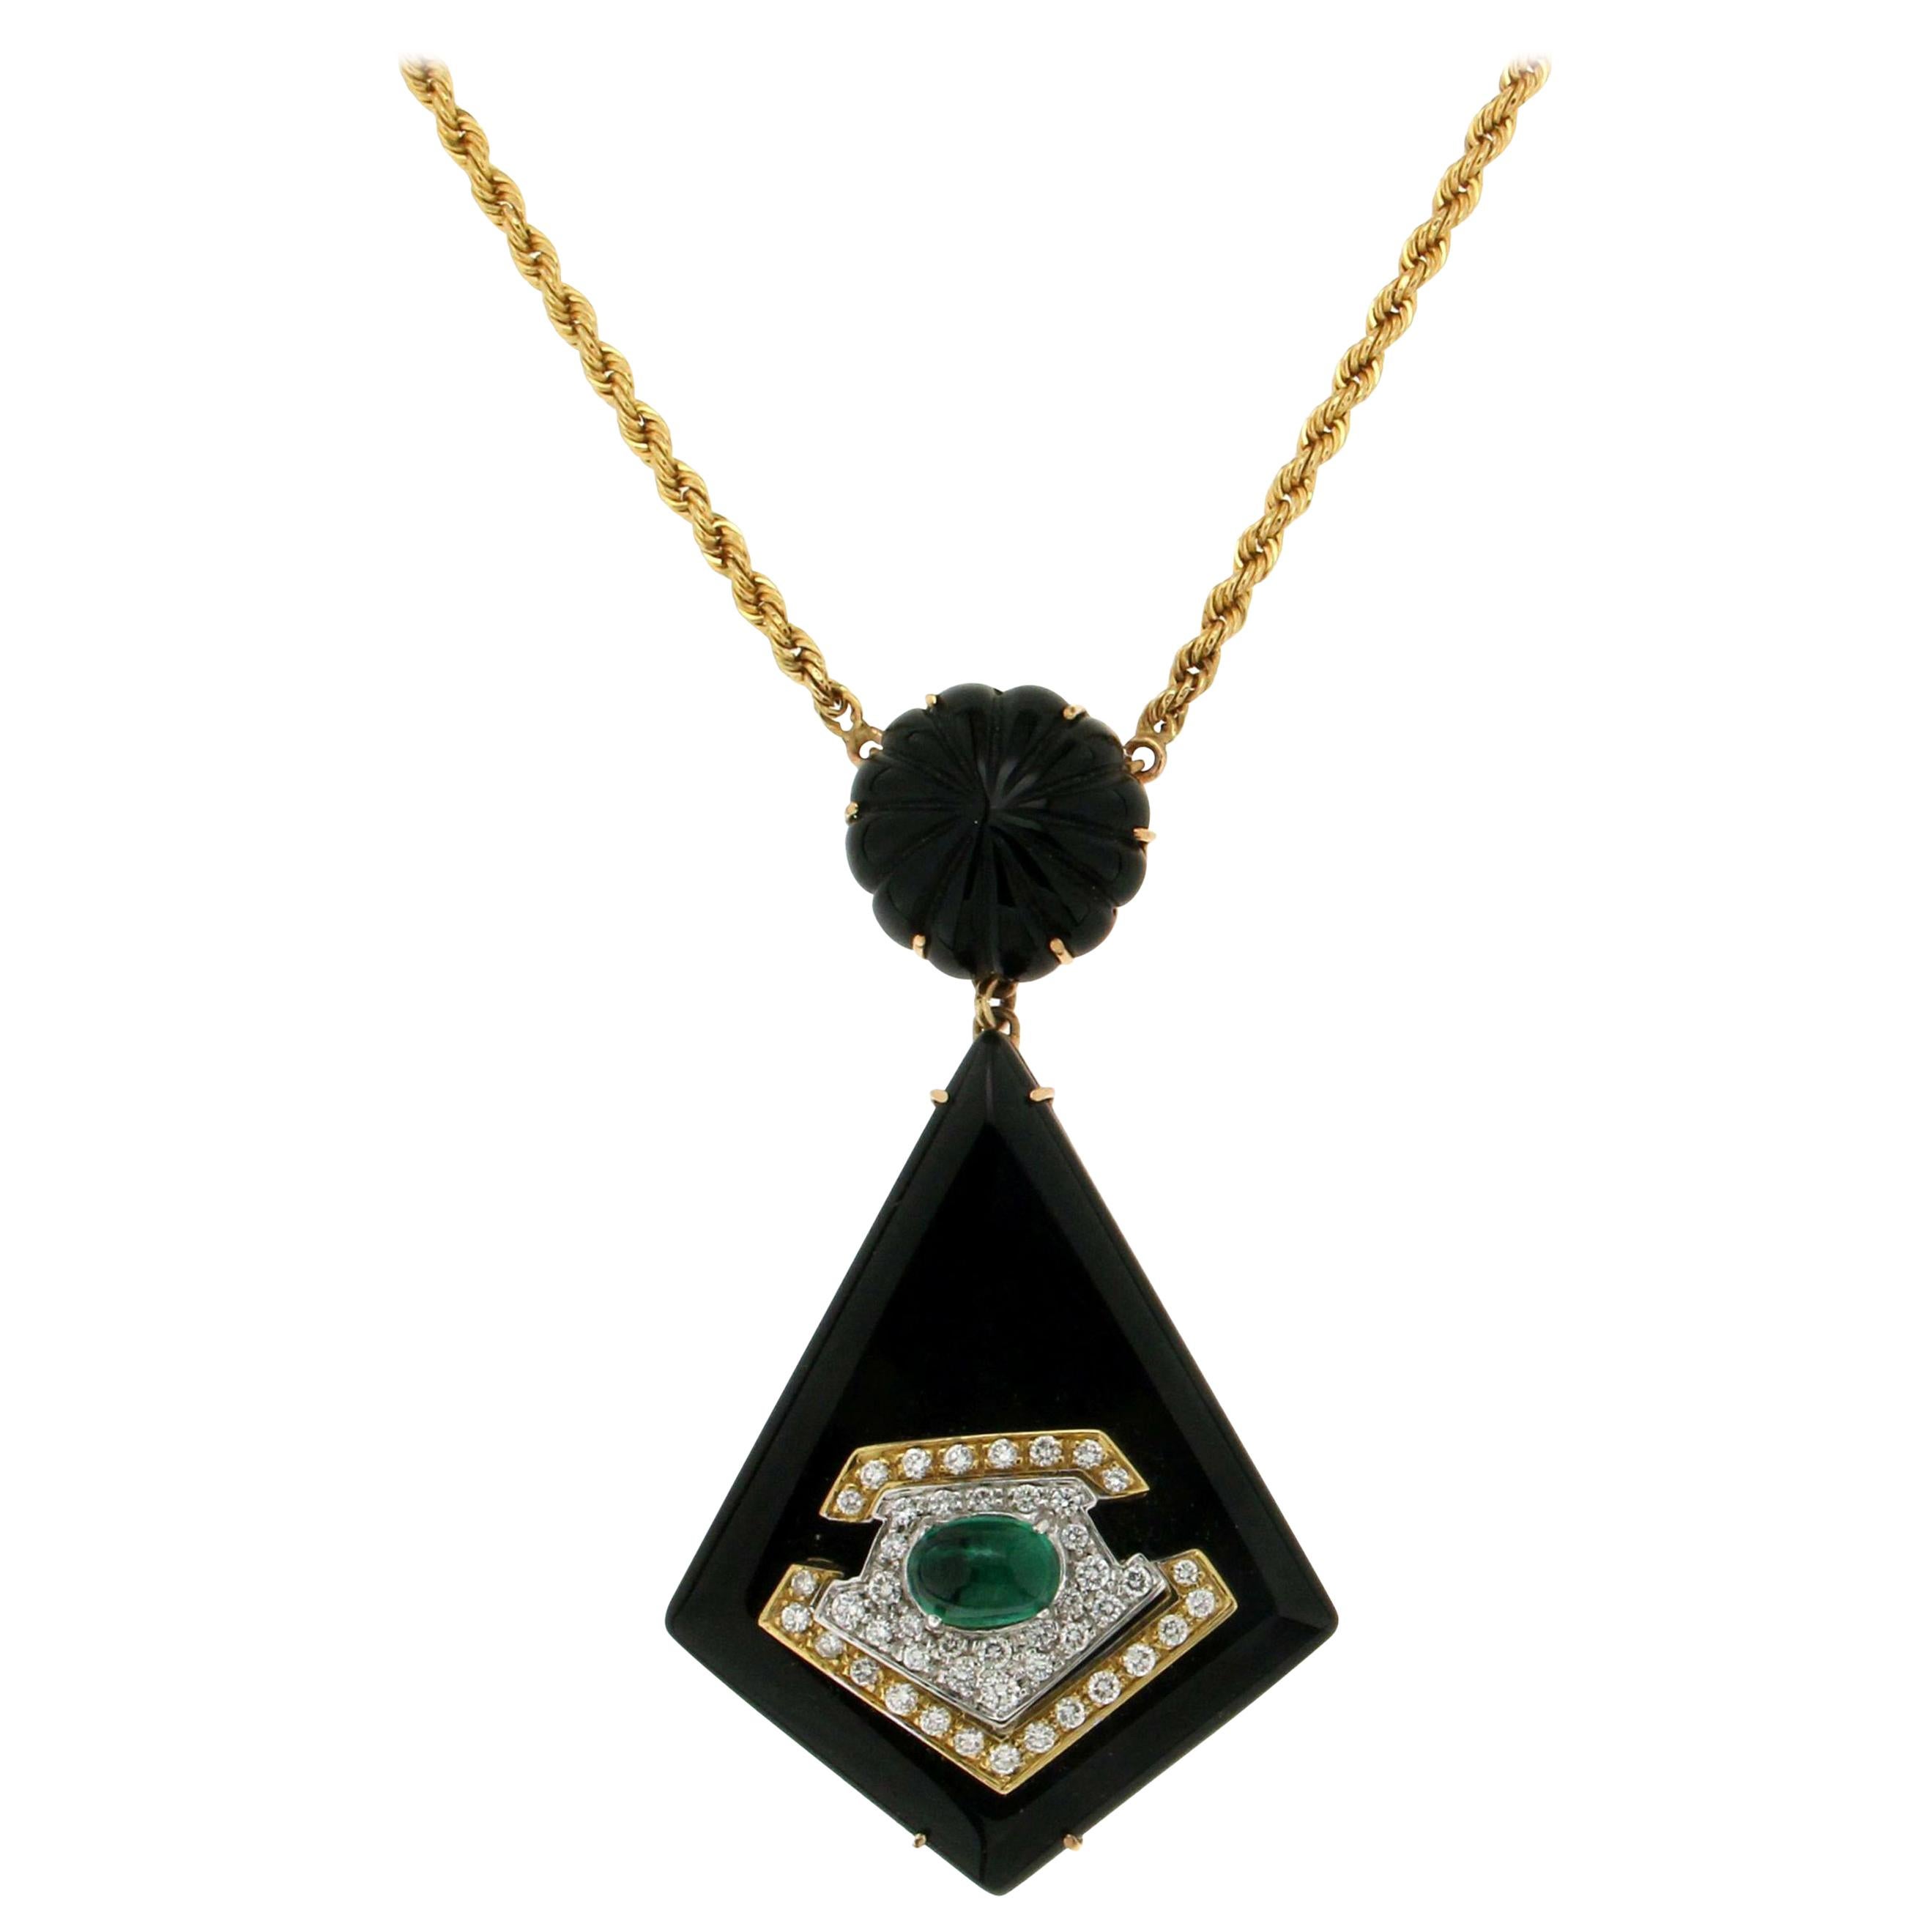 Handgefertigte Onyx-Halskette mit Smaragd-Anhänger aus 18 Karat Gelb- und Weißgold